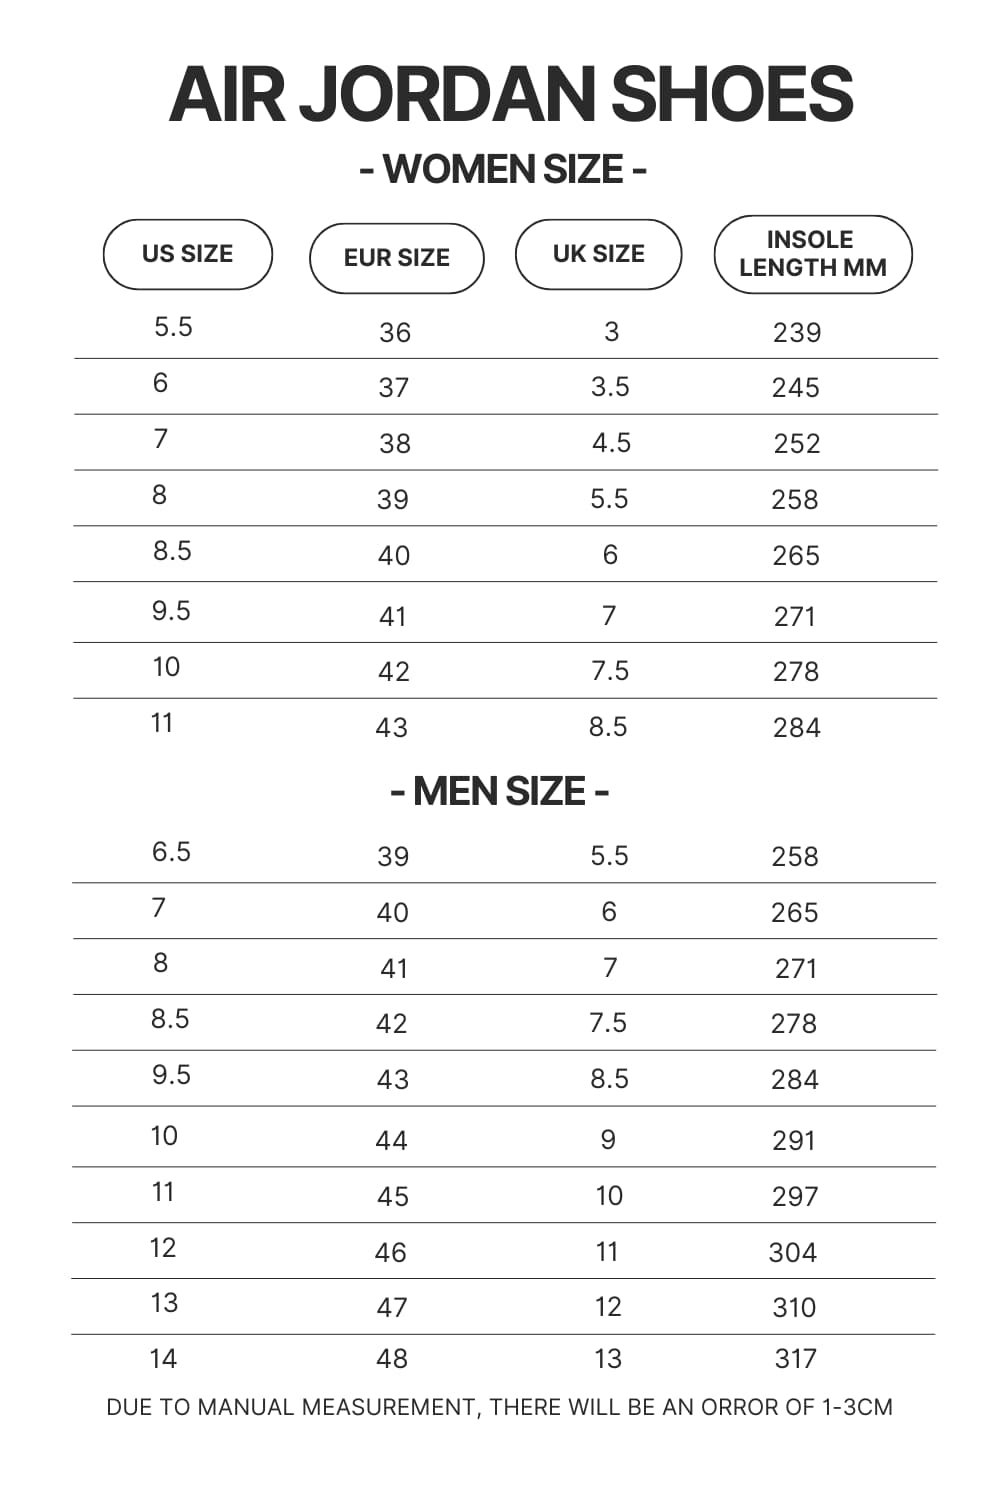 Air Jordan Shoes Size Chart - One Piece Shoes